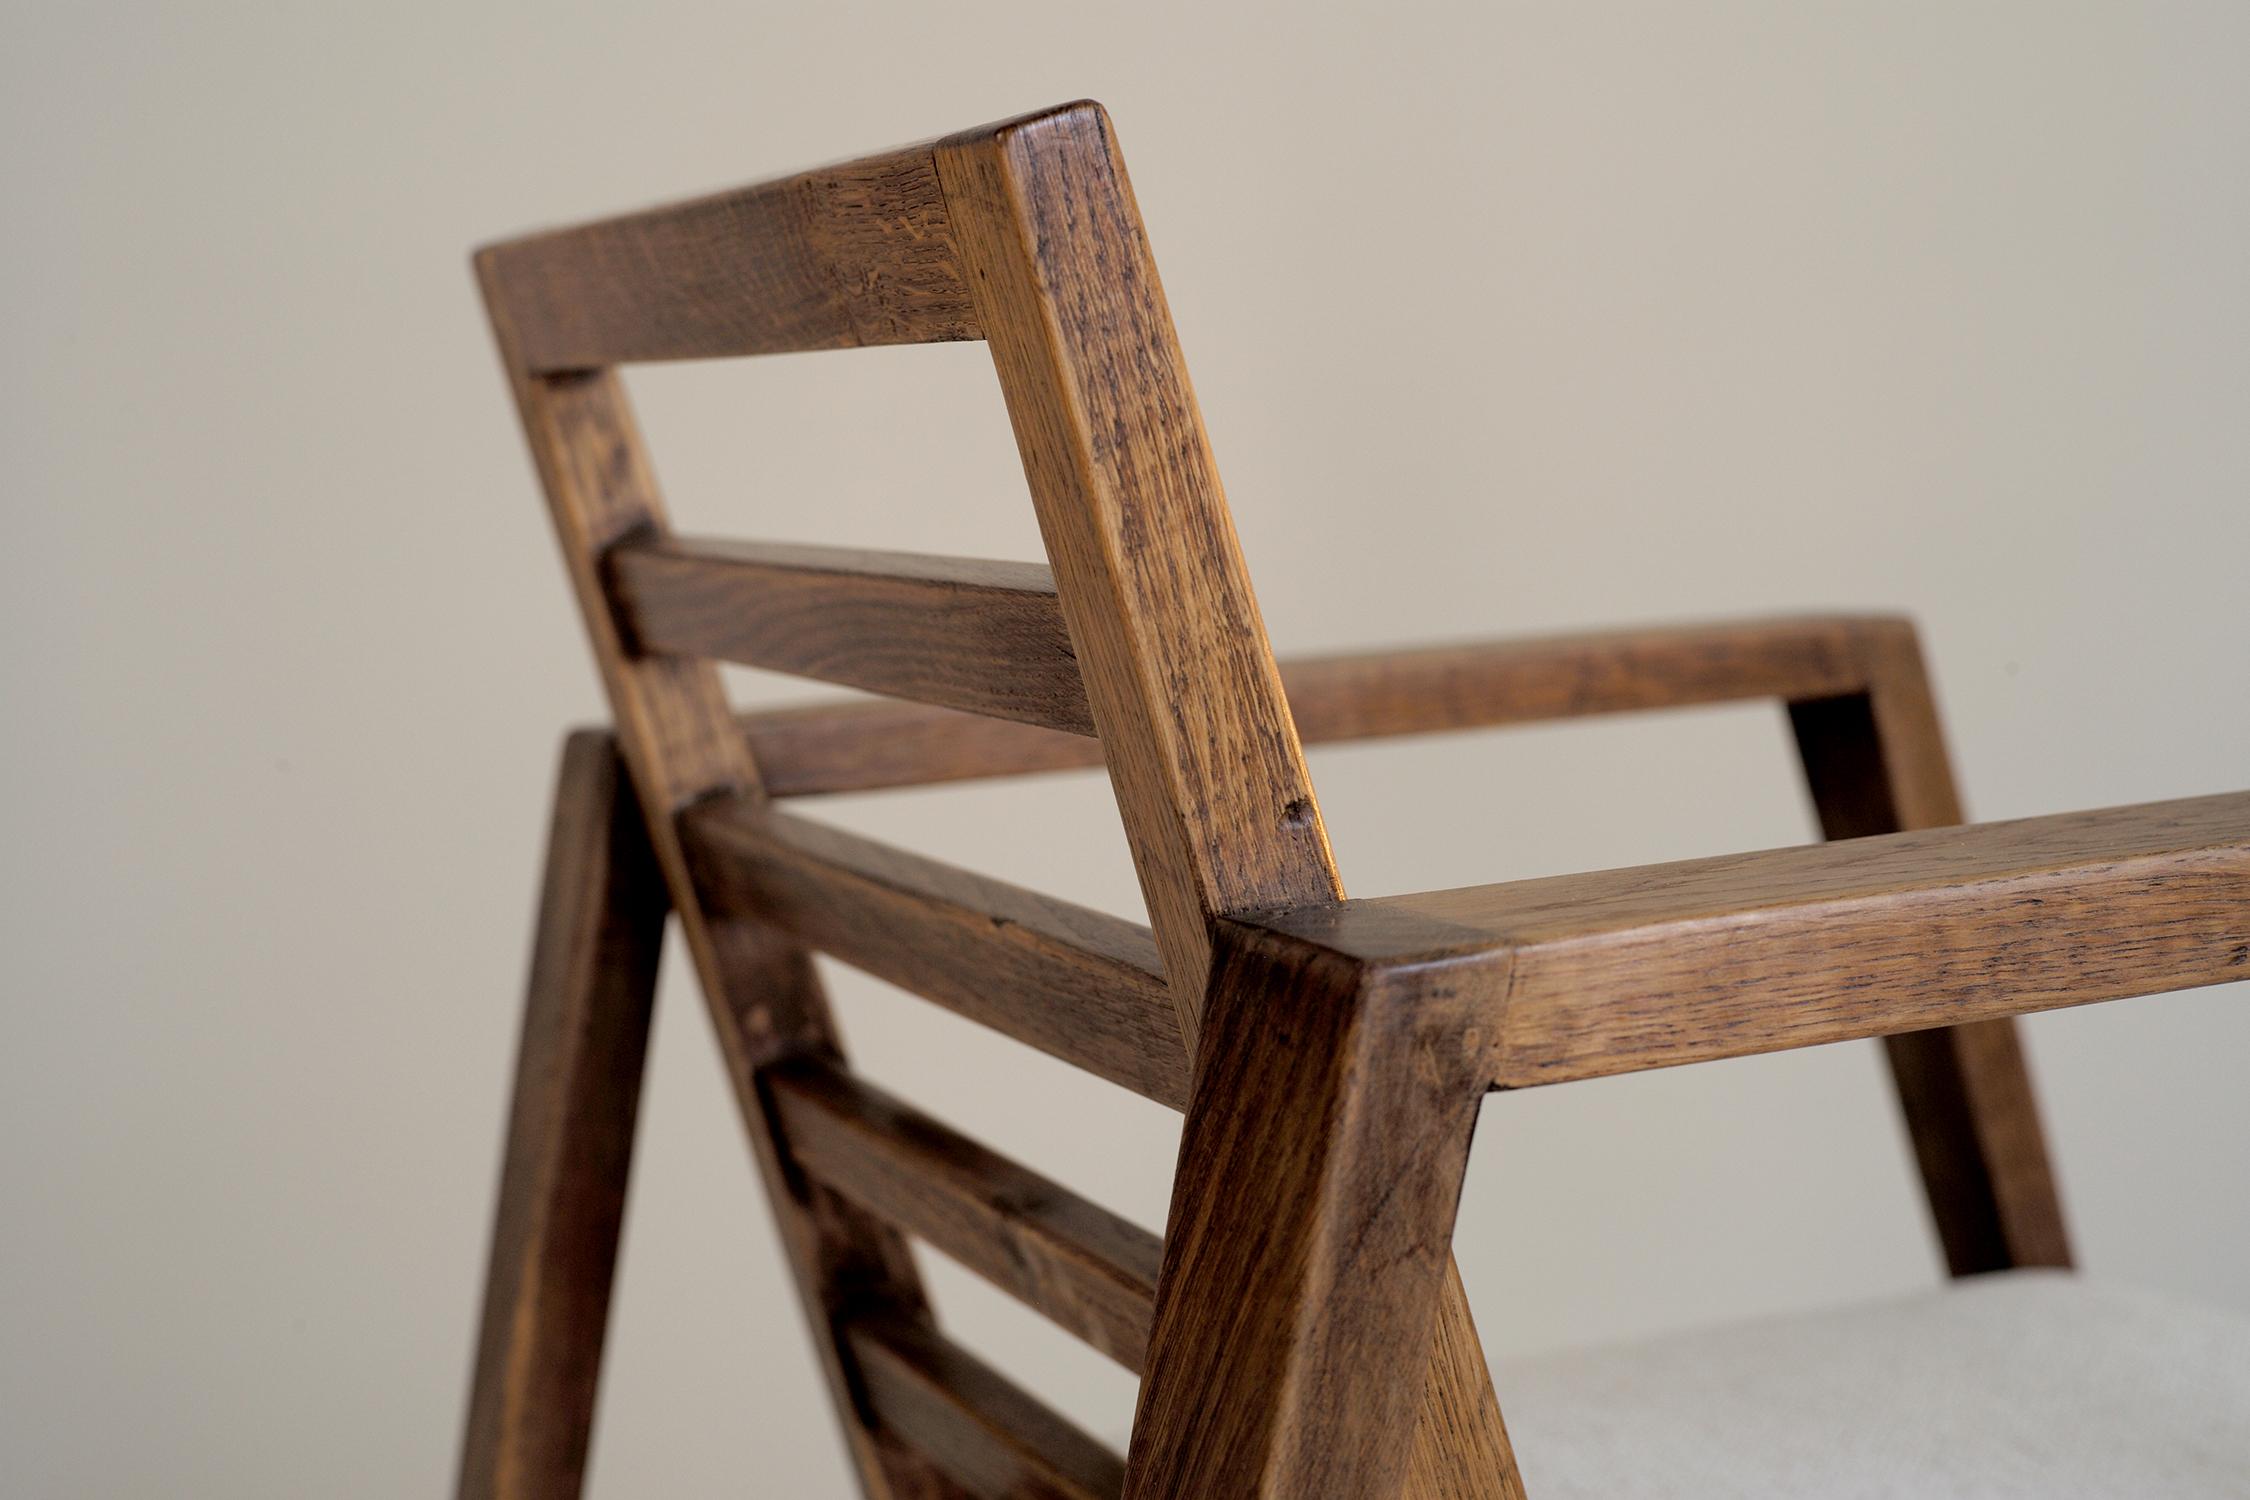 Seltene modernistische Sessel René Gabriel Eiche und Wolle Stoff gesprenkelt, Frankreich, 1950. Der Sockel aus zwei trapezförmigen Bögen nimmt die Sitzfläche und die Rückenlehne auf, die durch vier Abstandshalter unterbrochen werden. Dieser schöne